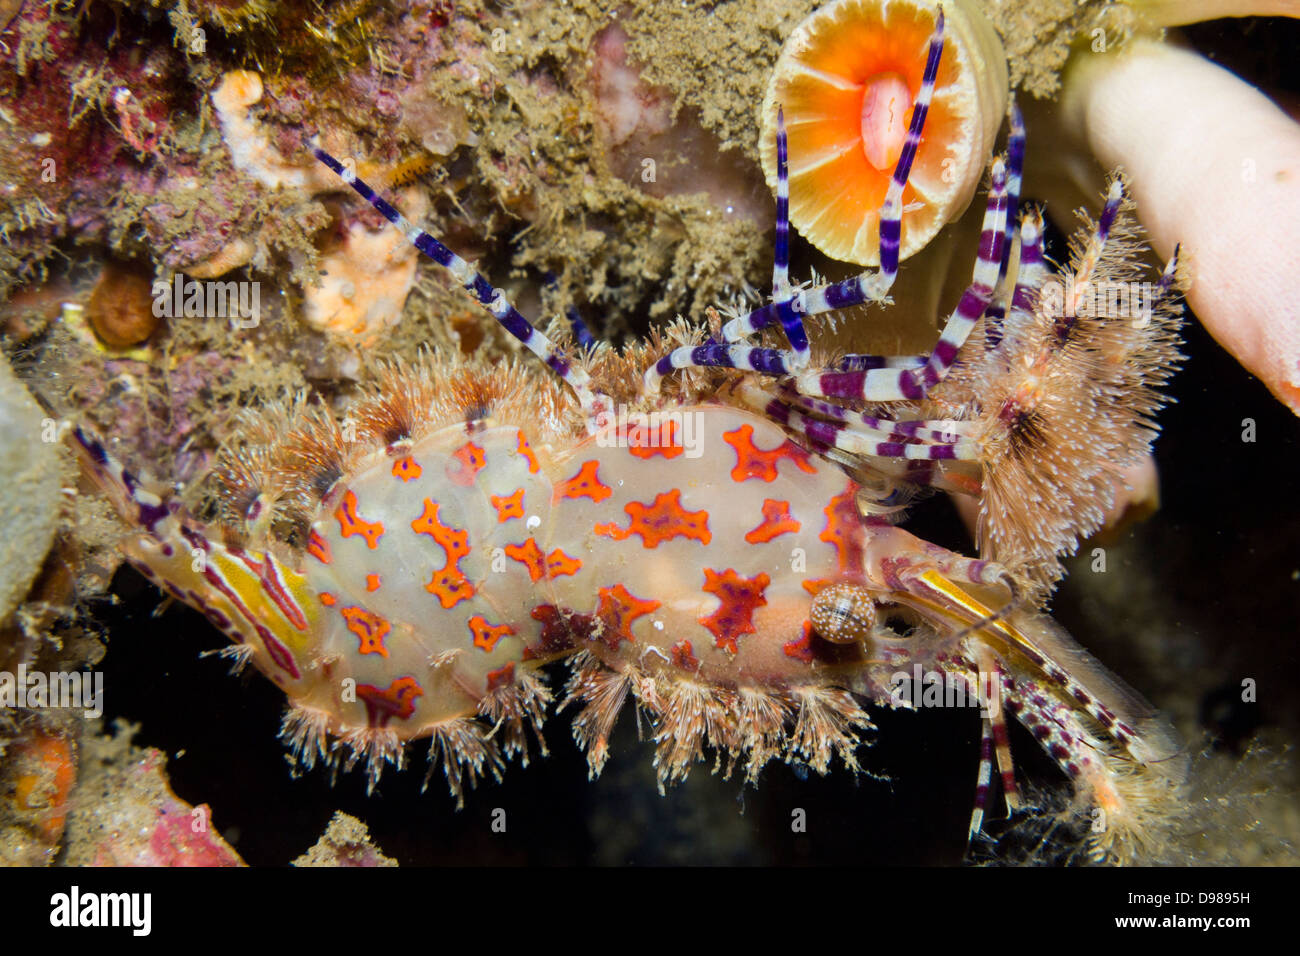 Saron shrimp - Saron marmoratus, or common marble shrimp, Ambon, Indonesia Stock Photo